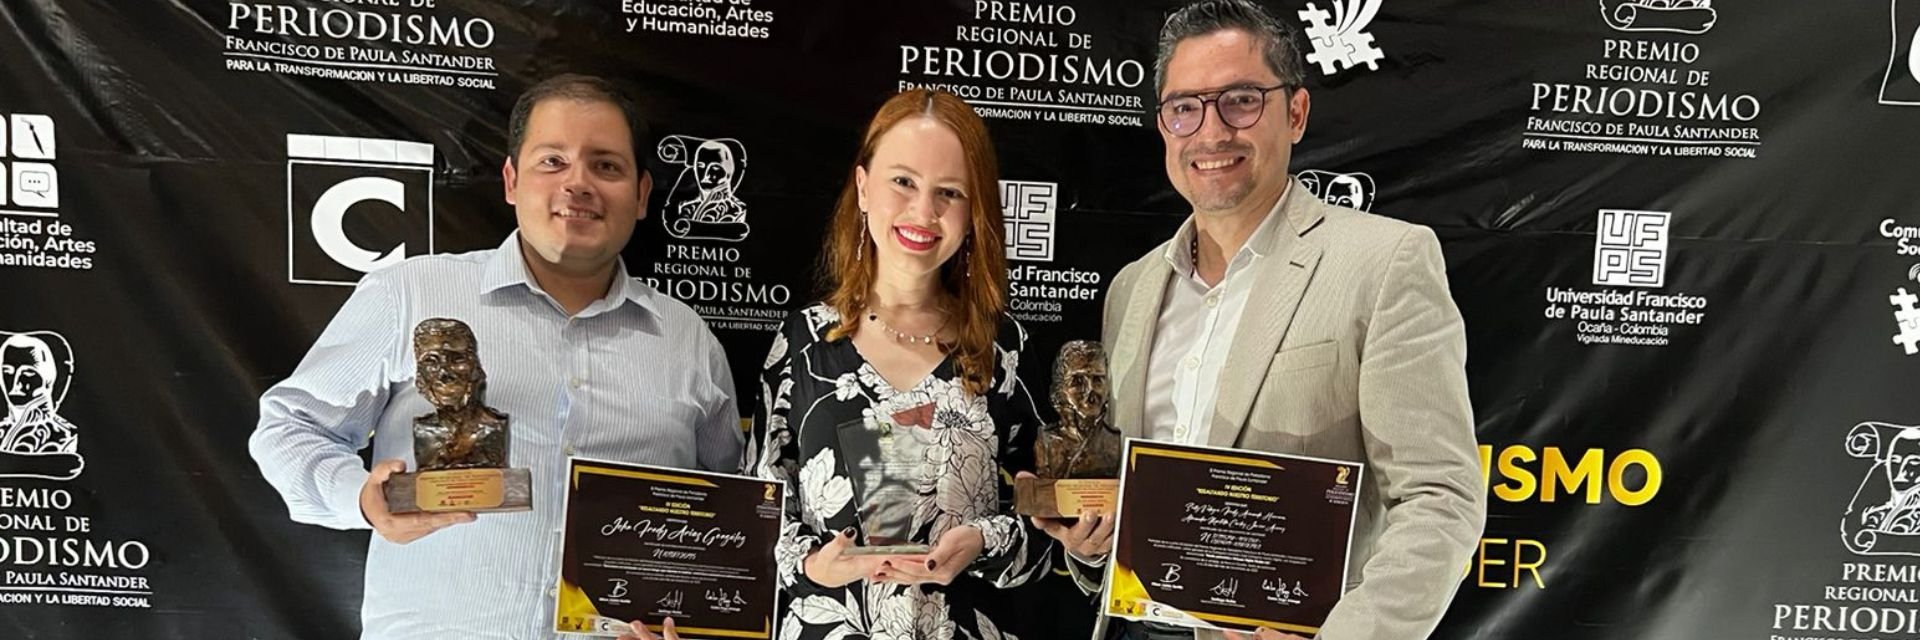 UDES se destacó en Premio Regional de Periodismo ‘Francisco de Paula Santander’